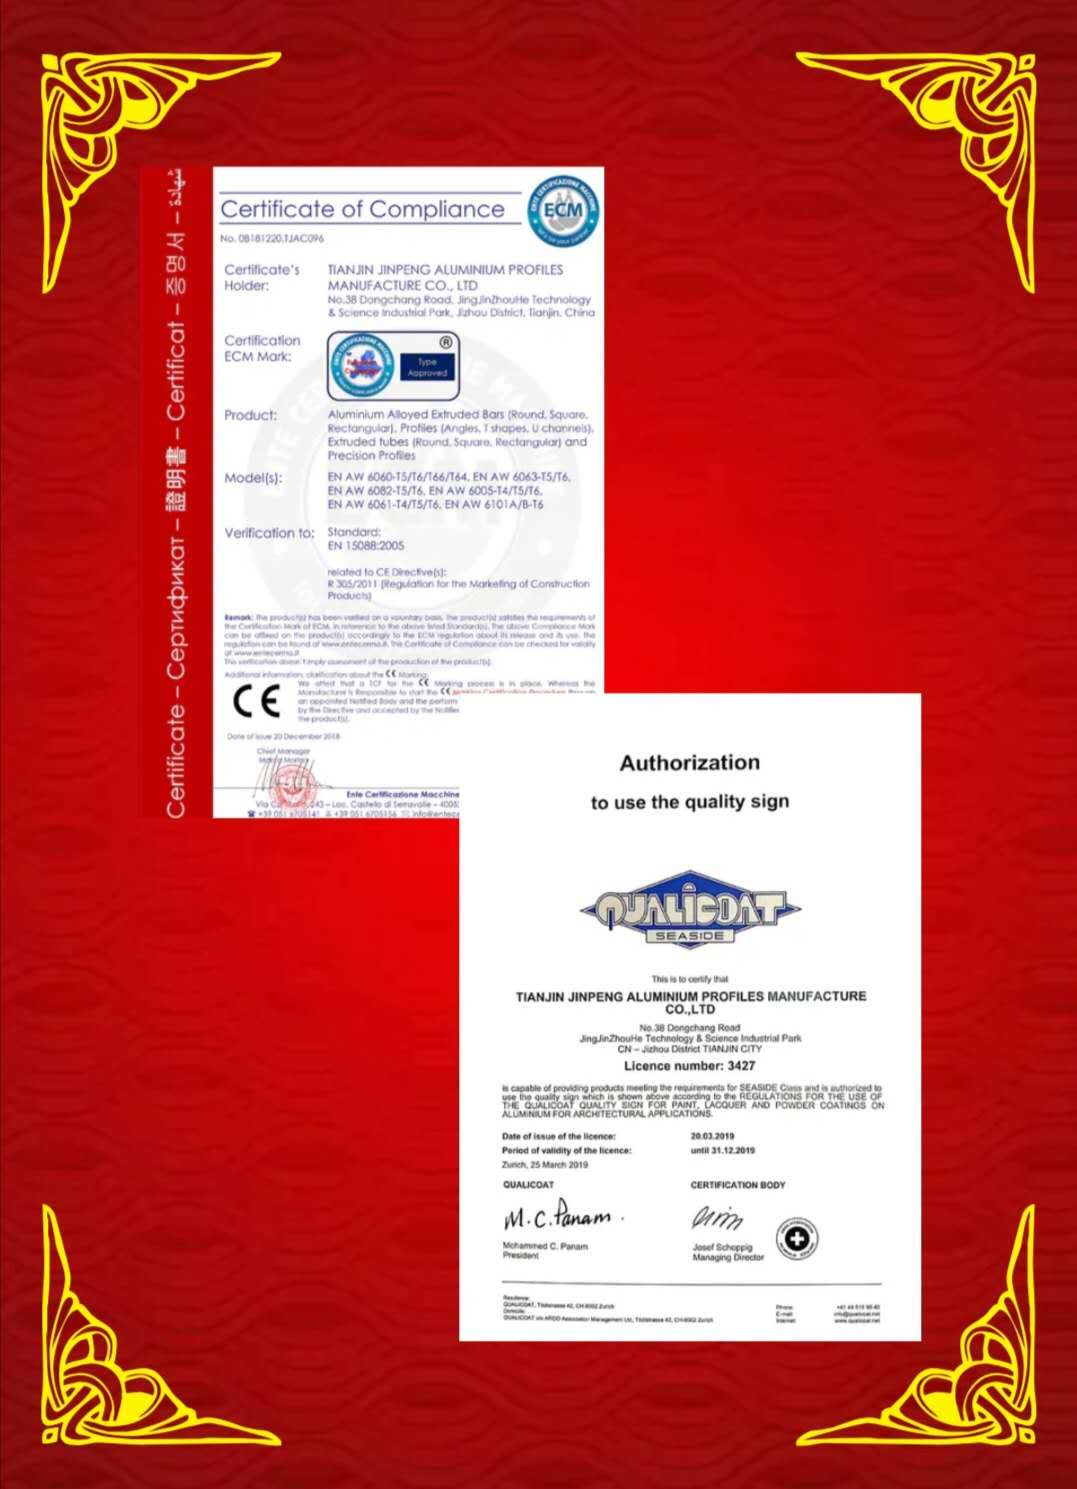 ECM认证证书